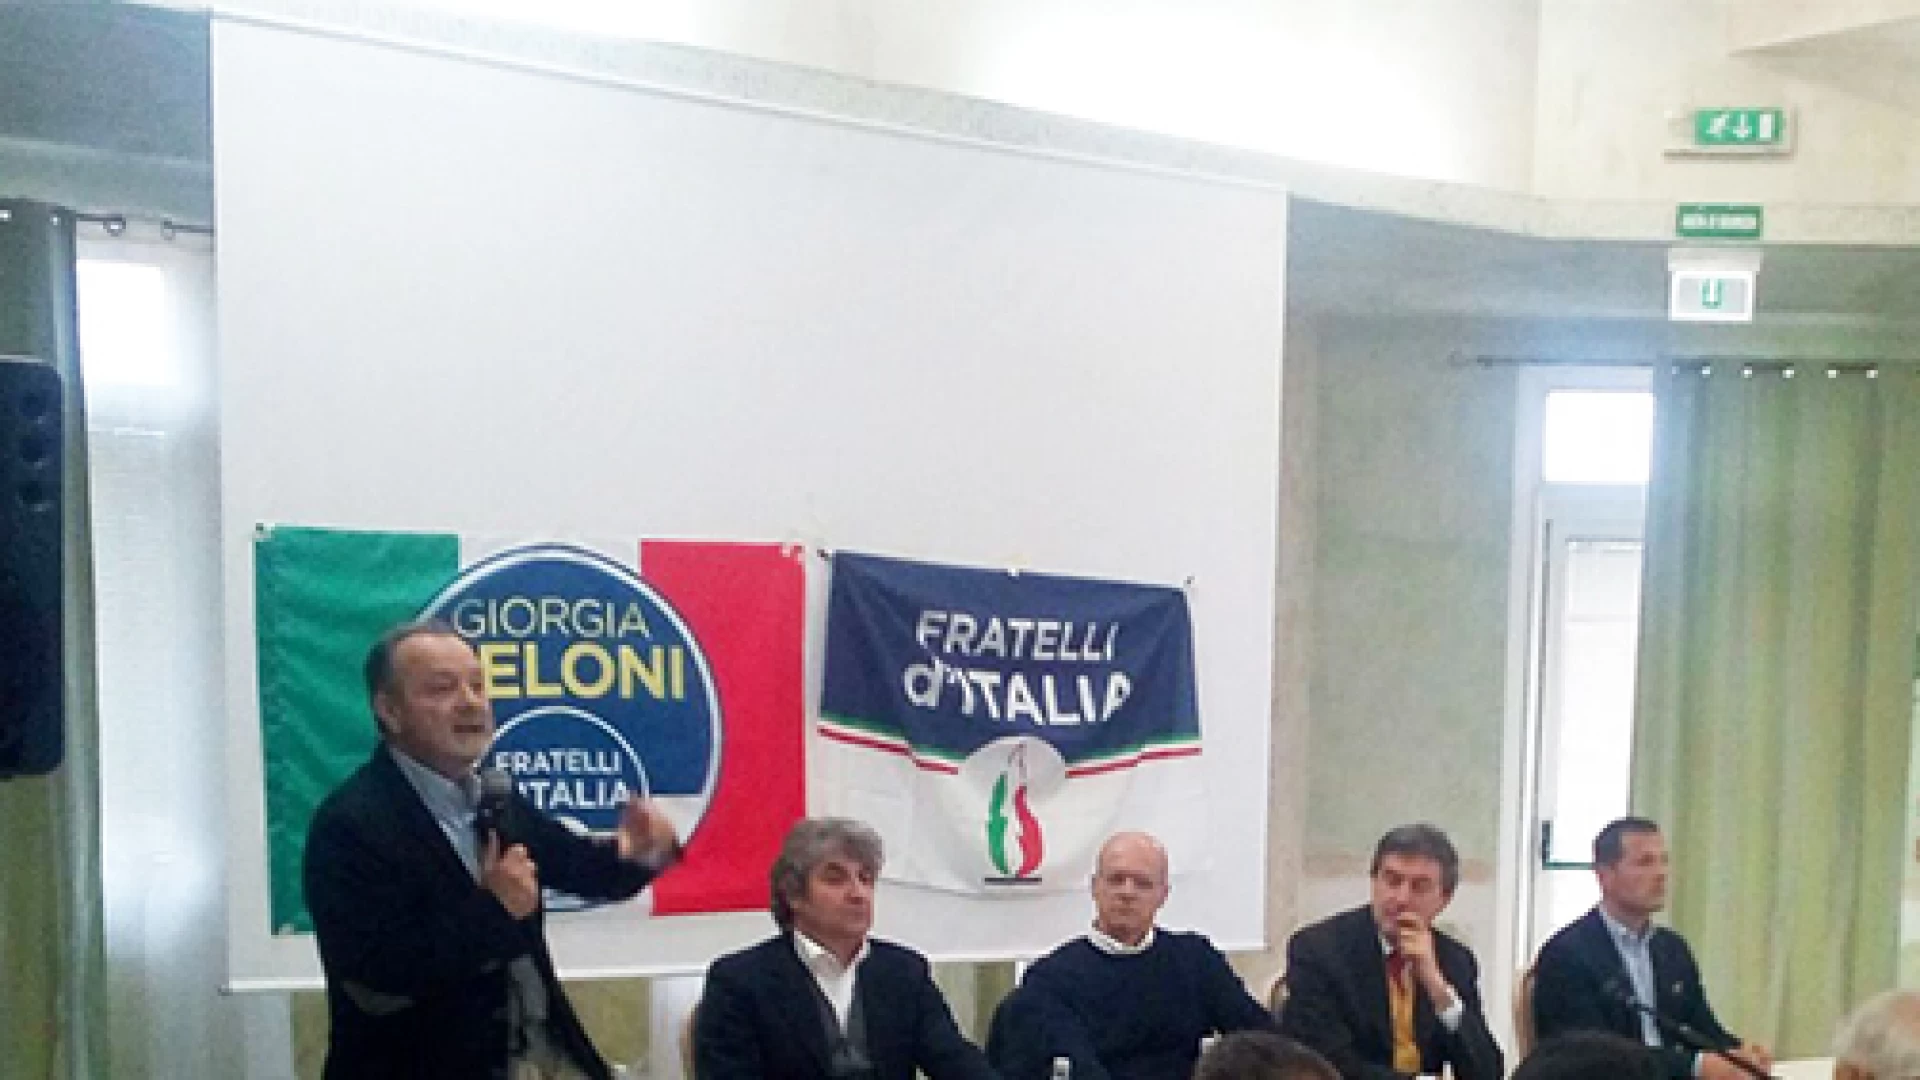 Regionali: Fratelli d’Italia ha presentato la squadra. Di Sandro: “Coerenza ed unione a sostegno di Toma”. Continua la campagna elettorale del centrodestra.